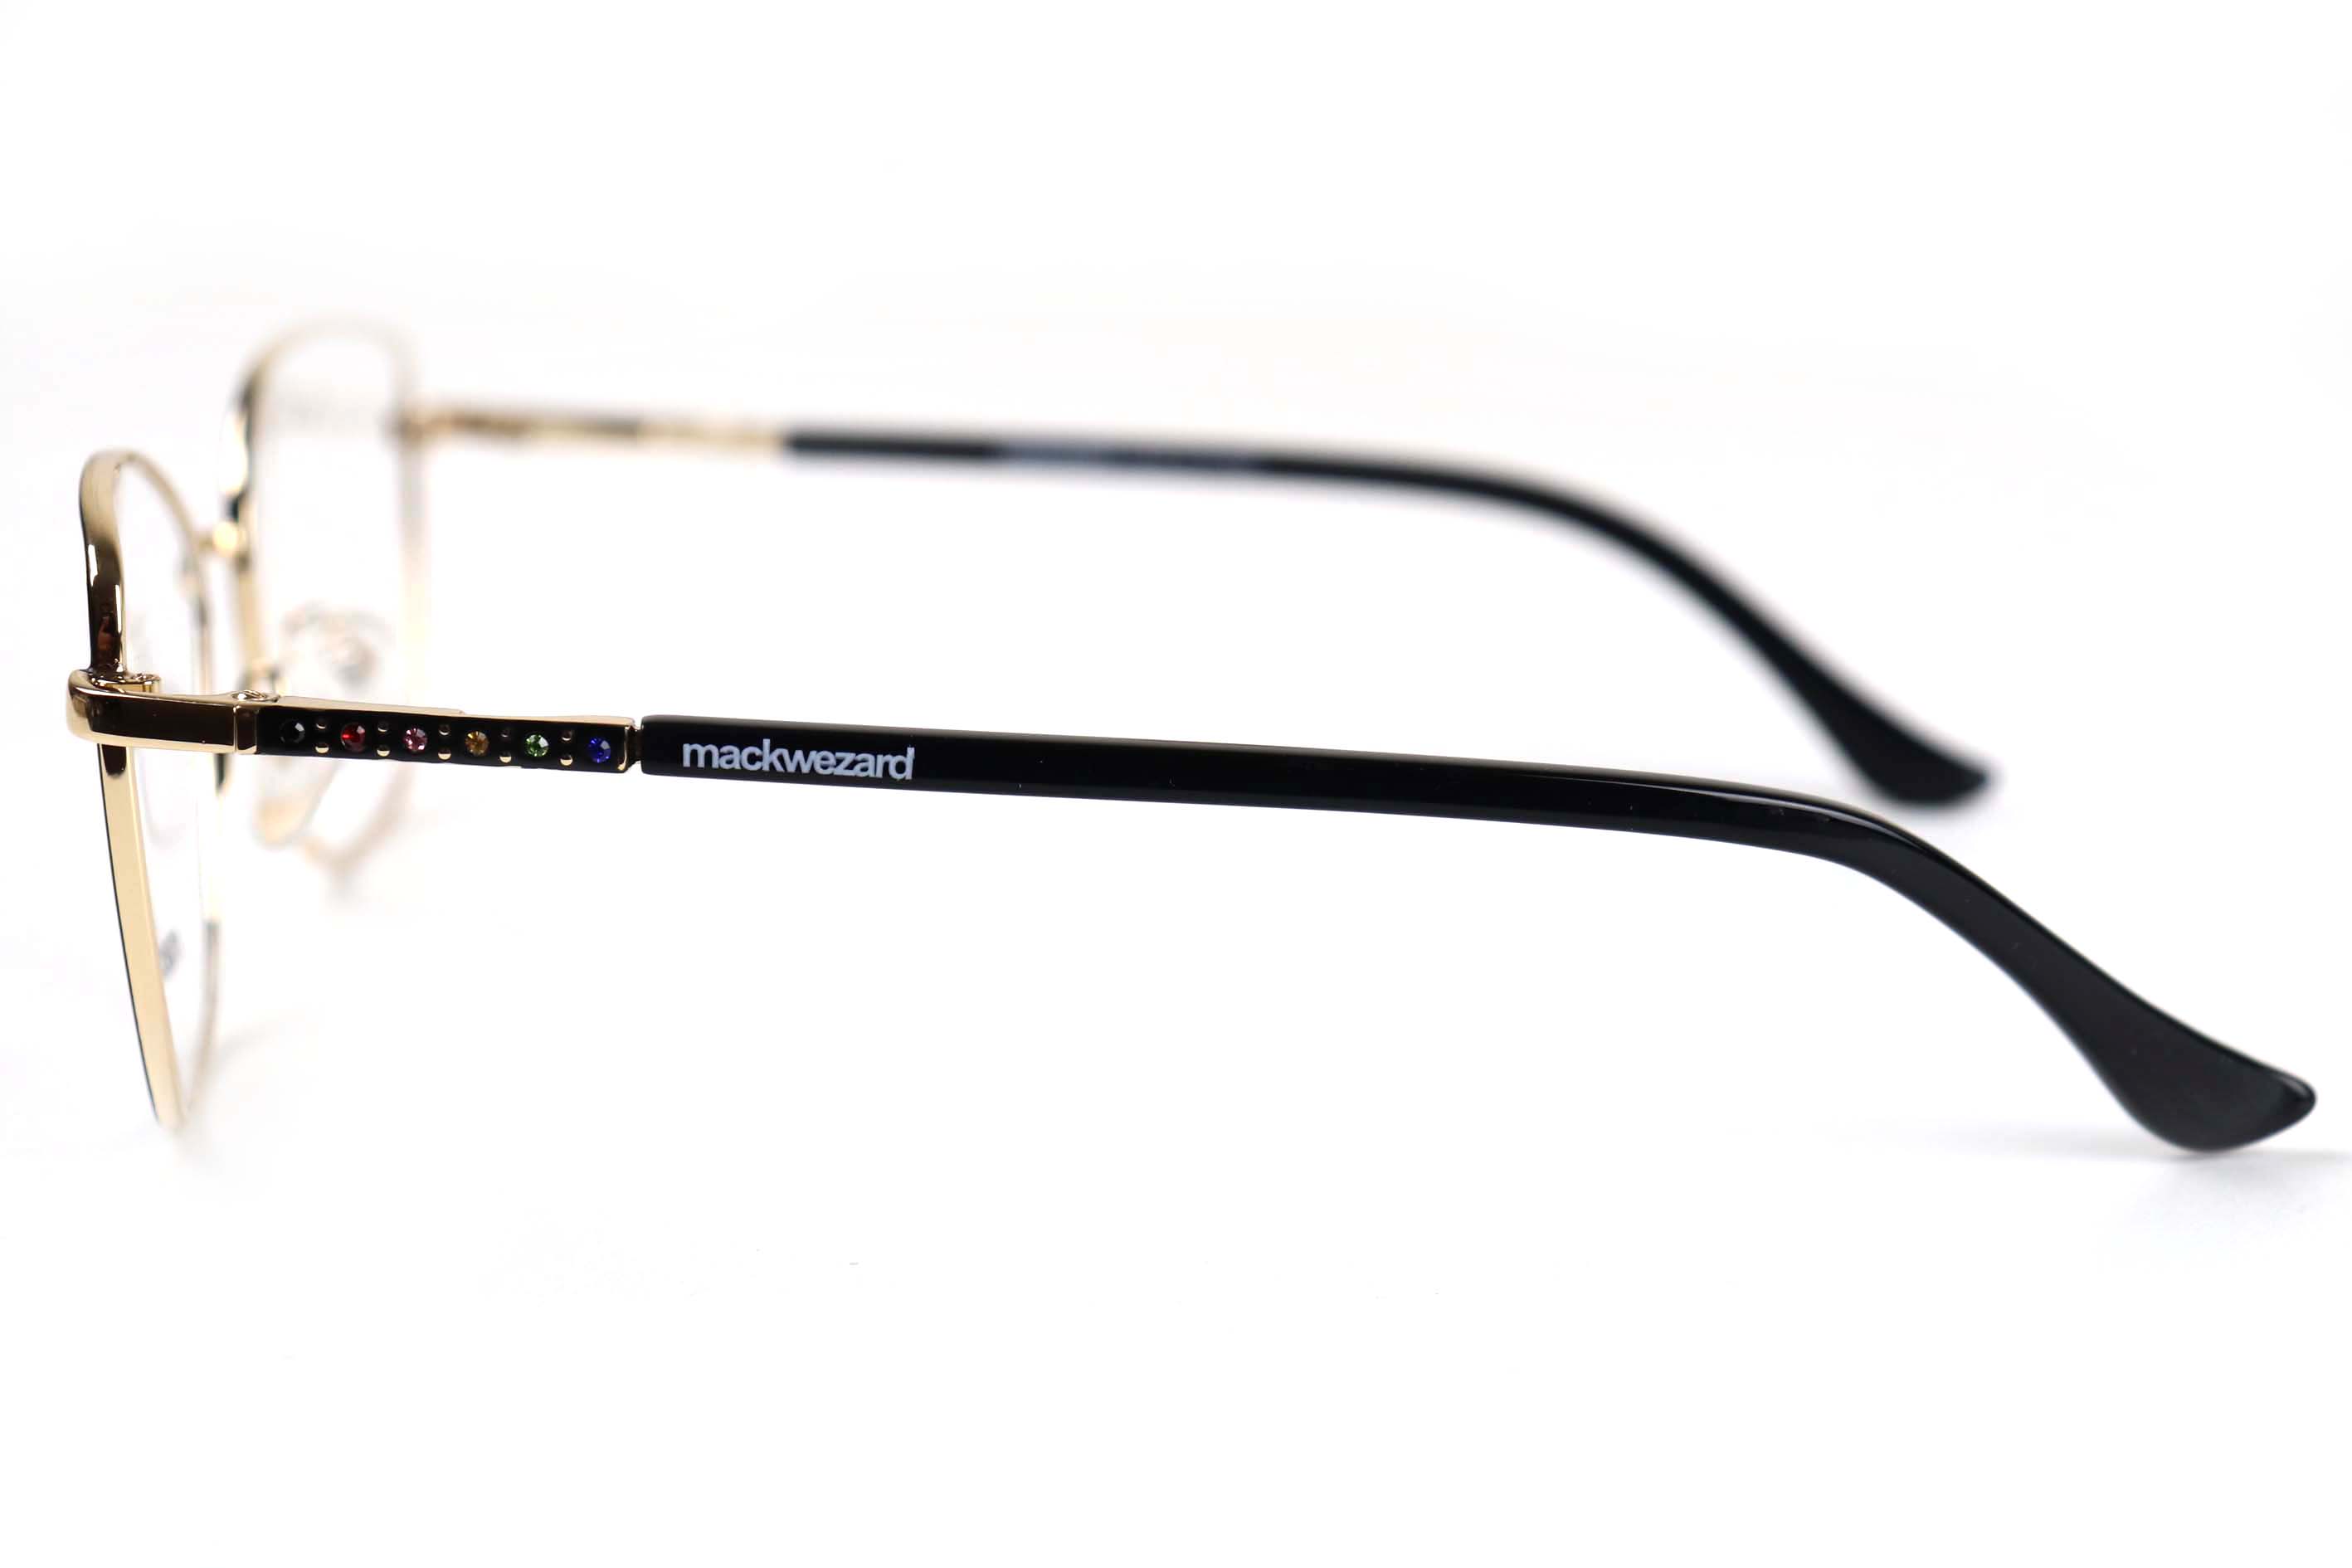 Mackwezard Eyeglasses- 1001-C2-54-18-140